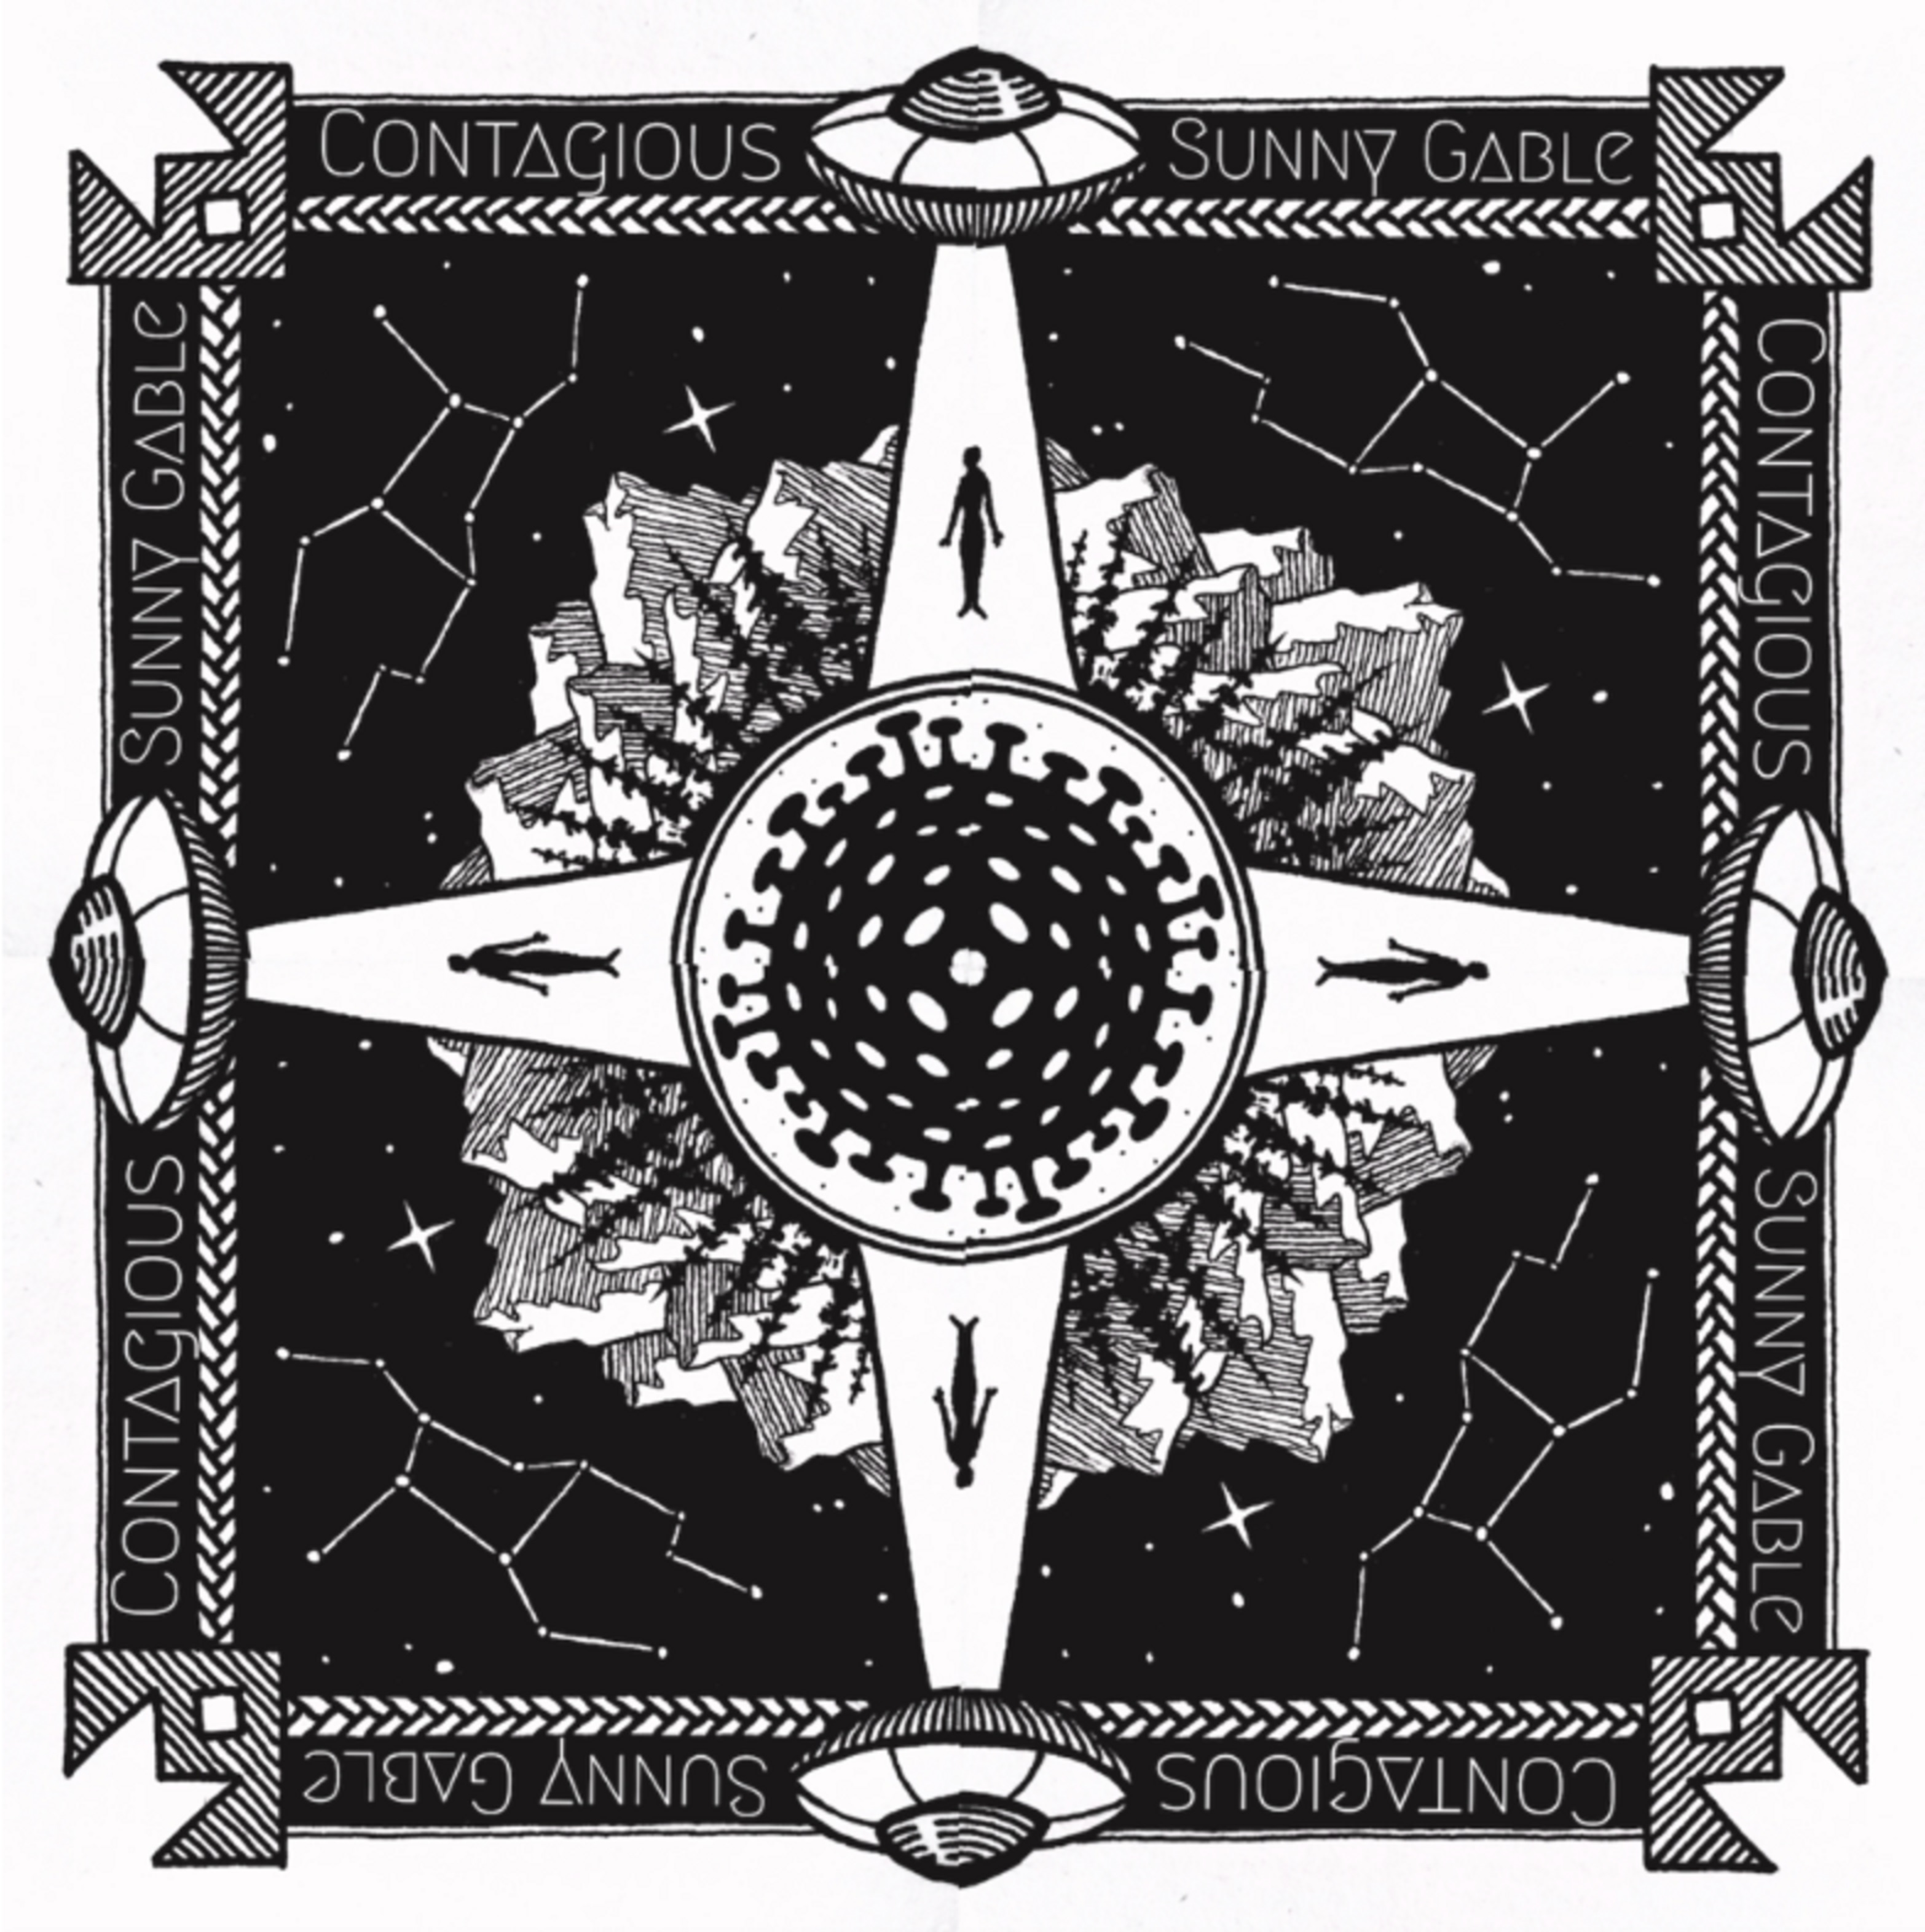 Sunny Gable's Americana Album 'Contagious' Available 3/20